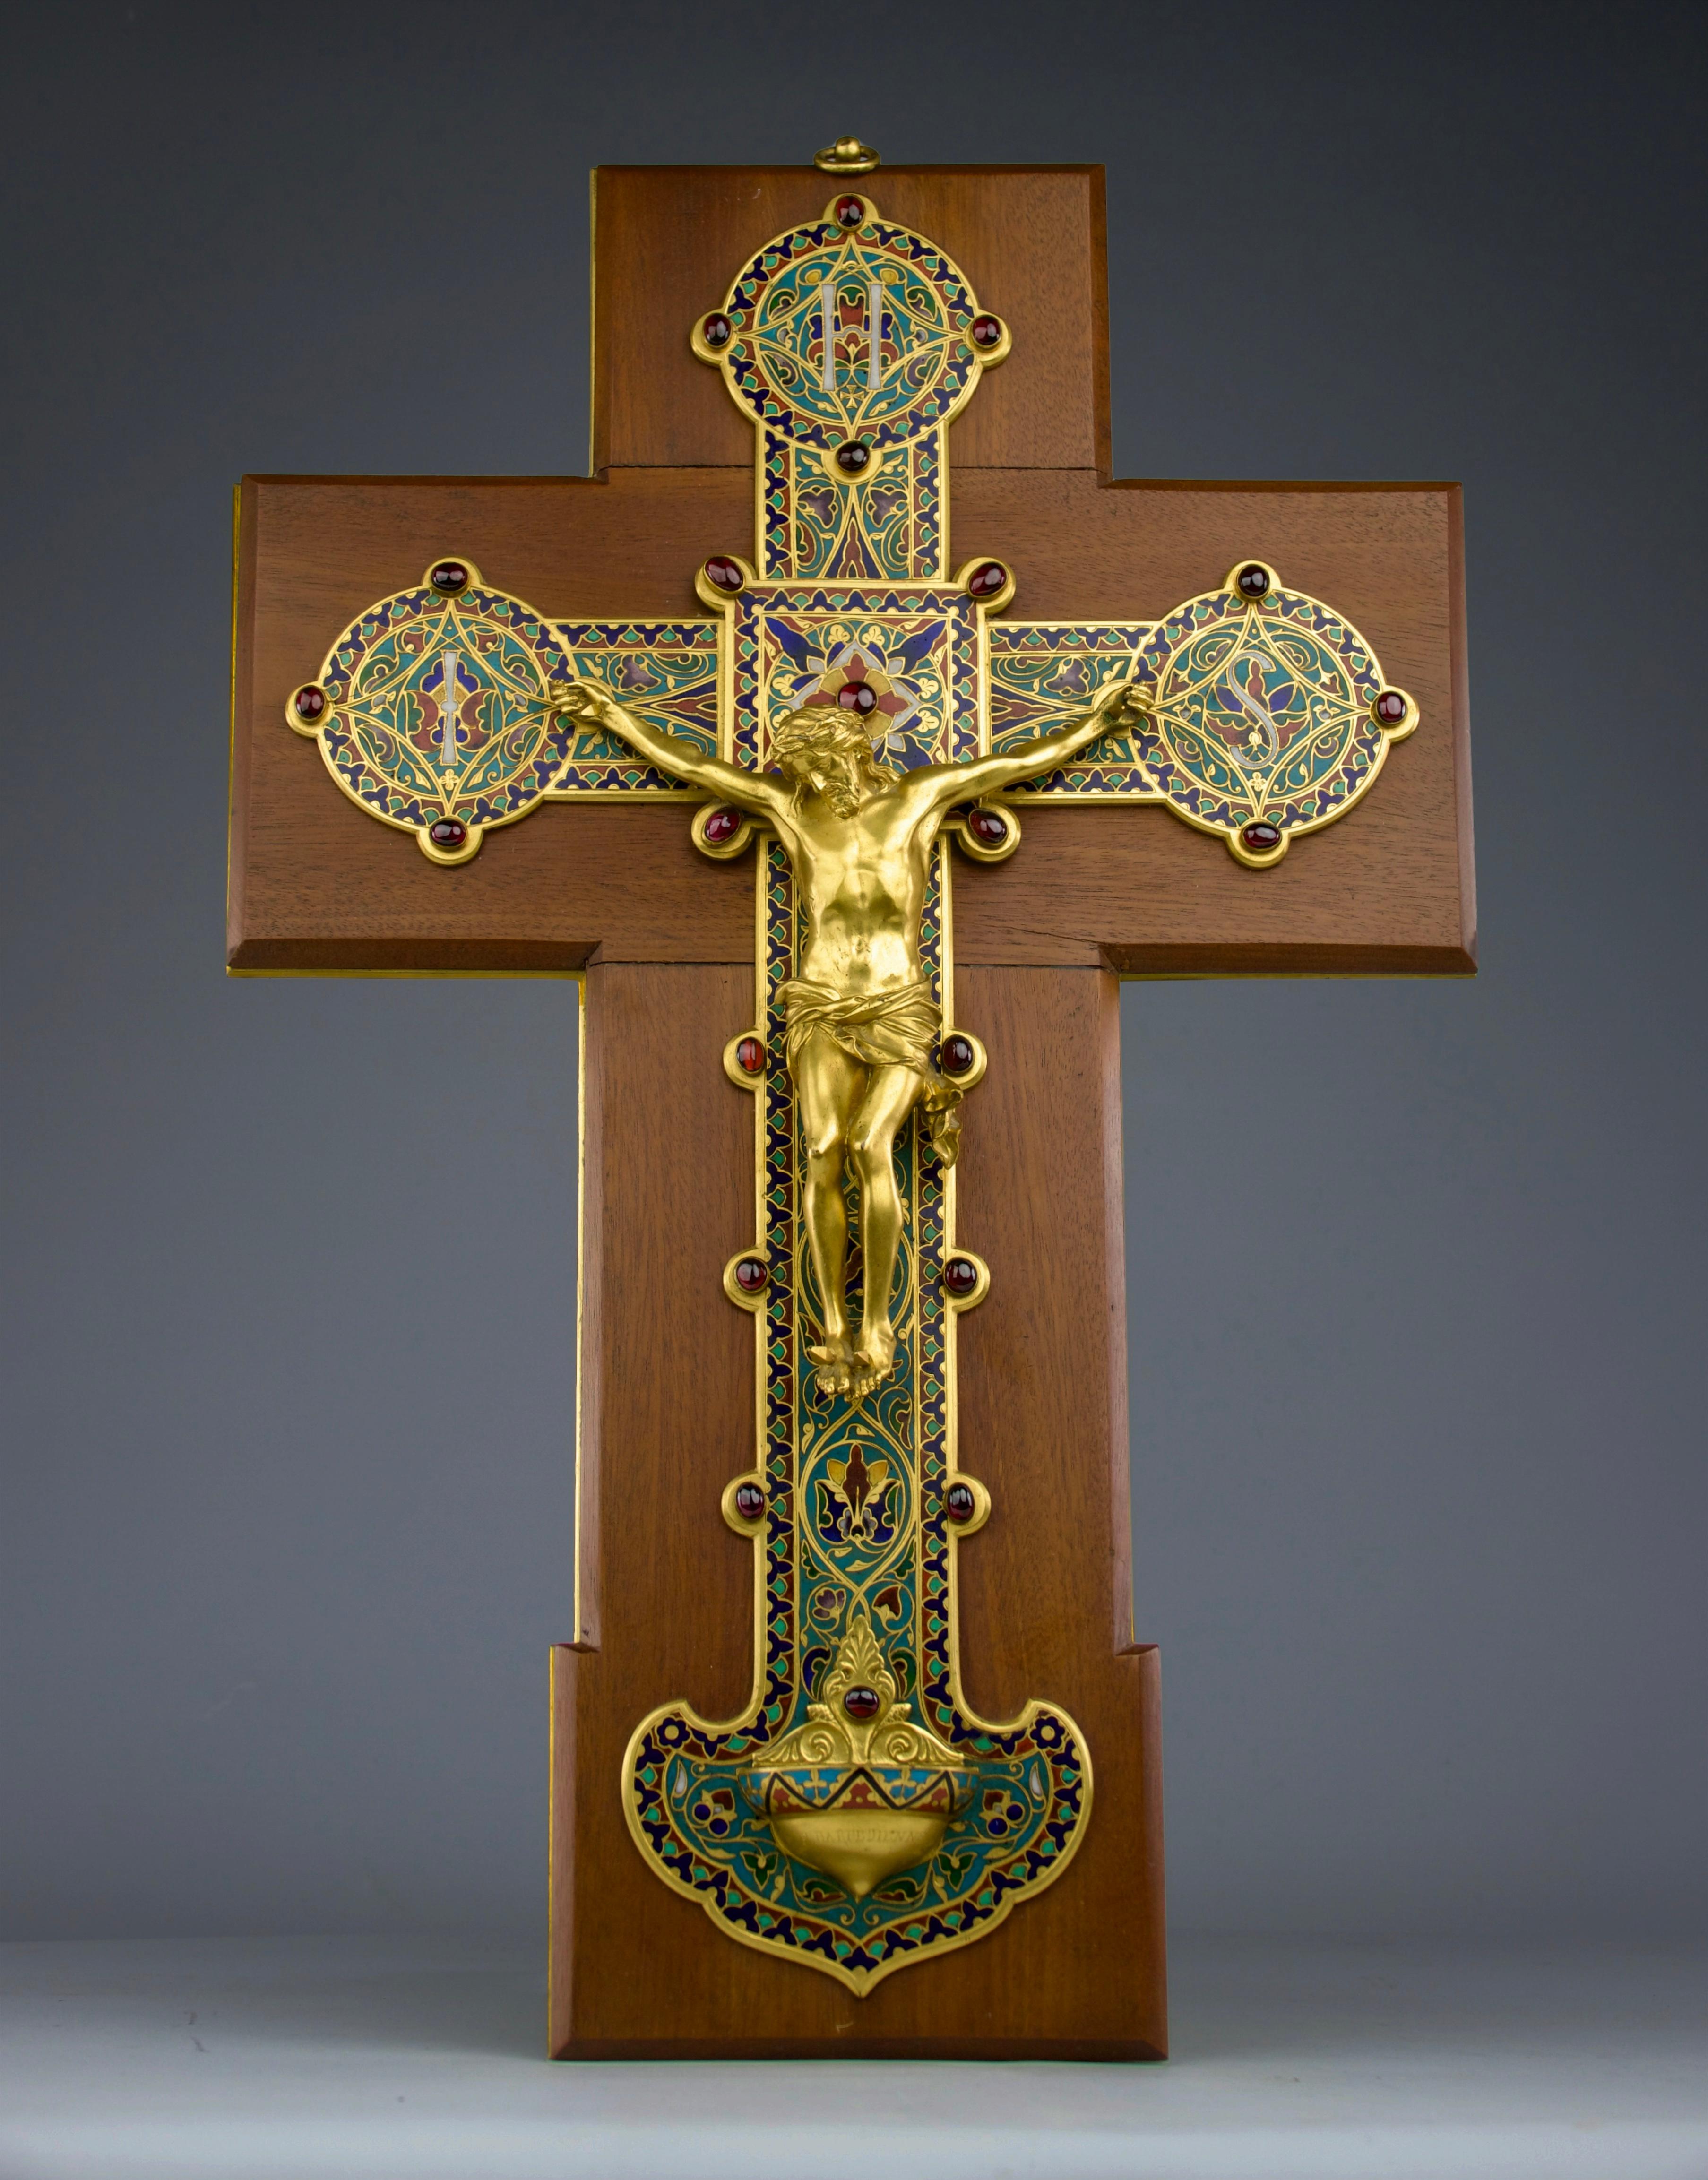 Romantic Ferdinand Barbedienne, Cloisonné Enamel Arabesque Crucifix, France 19th Century